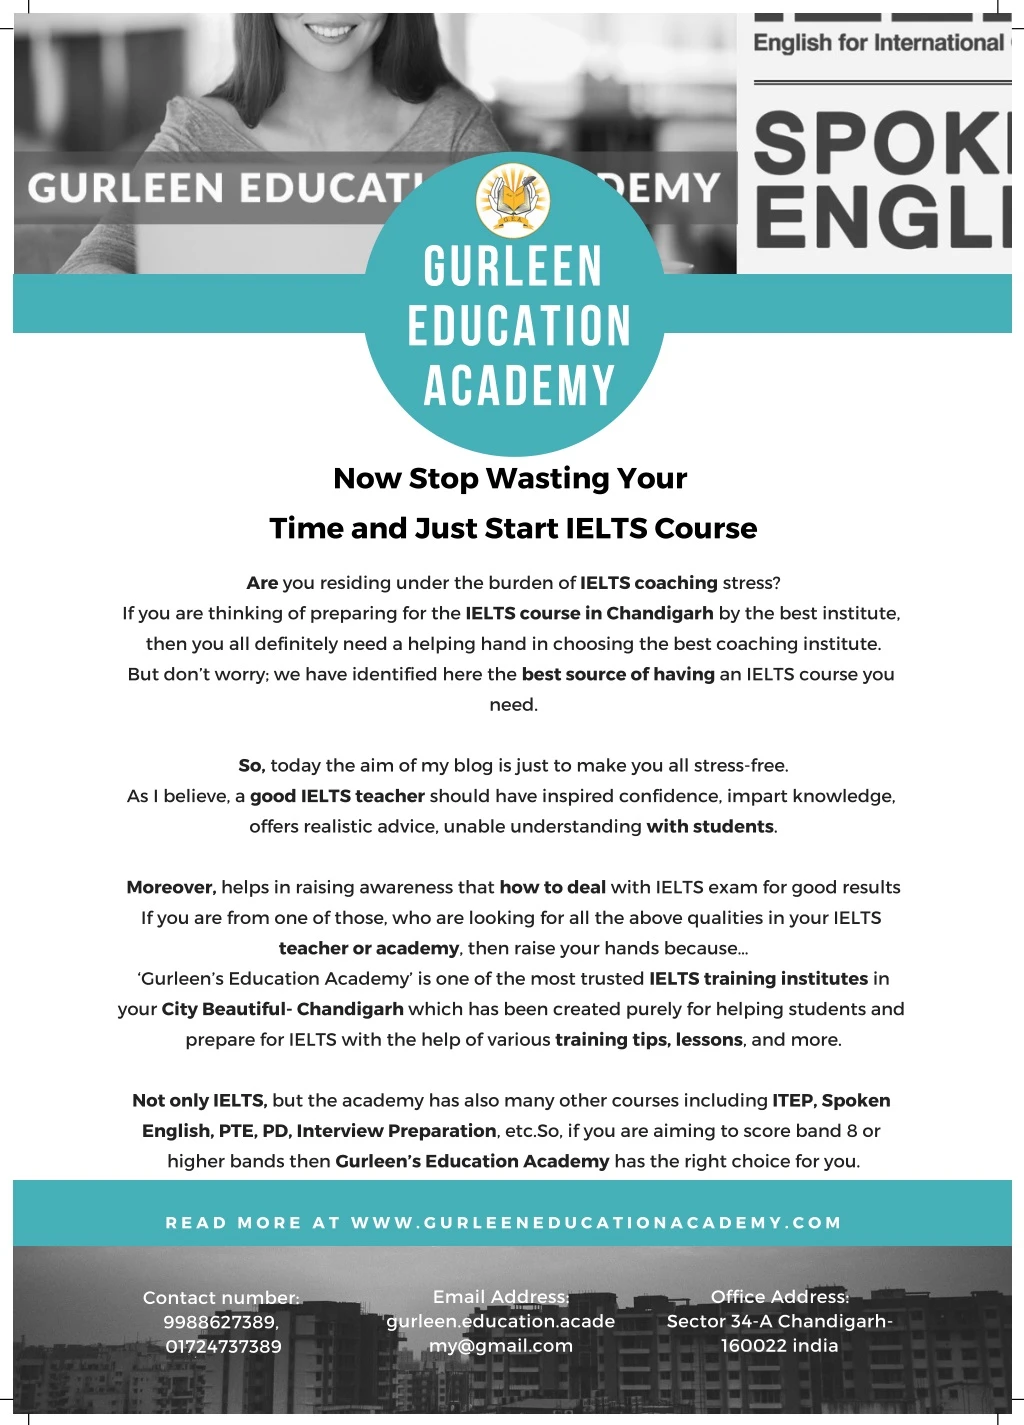 gurleen education academy